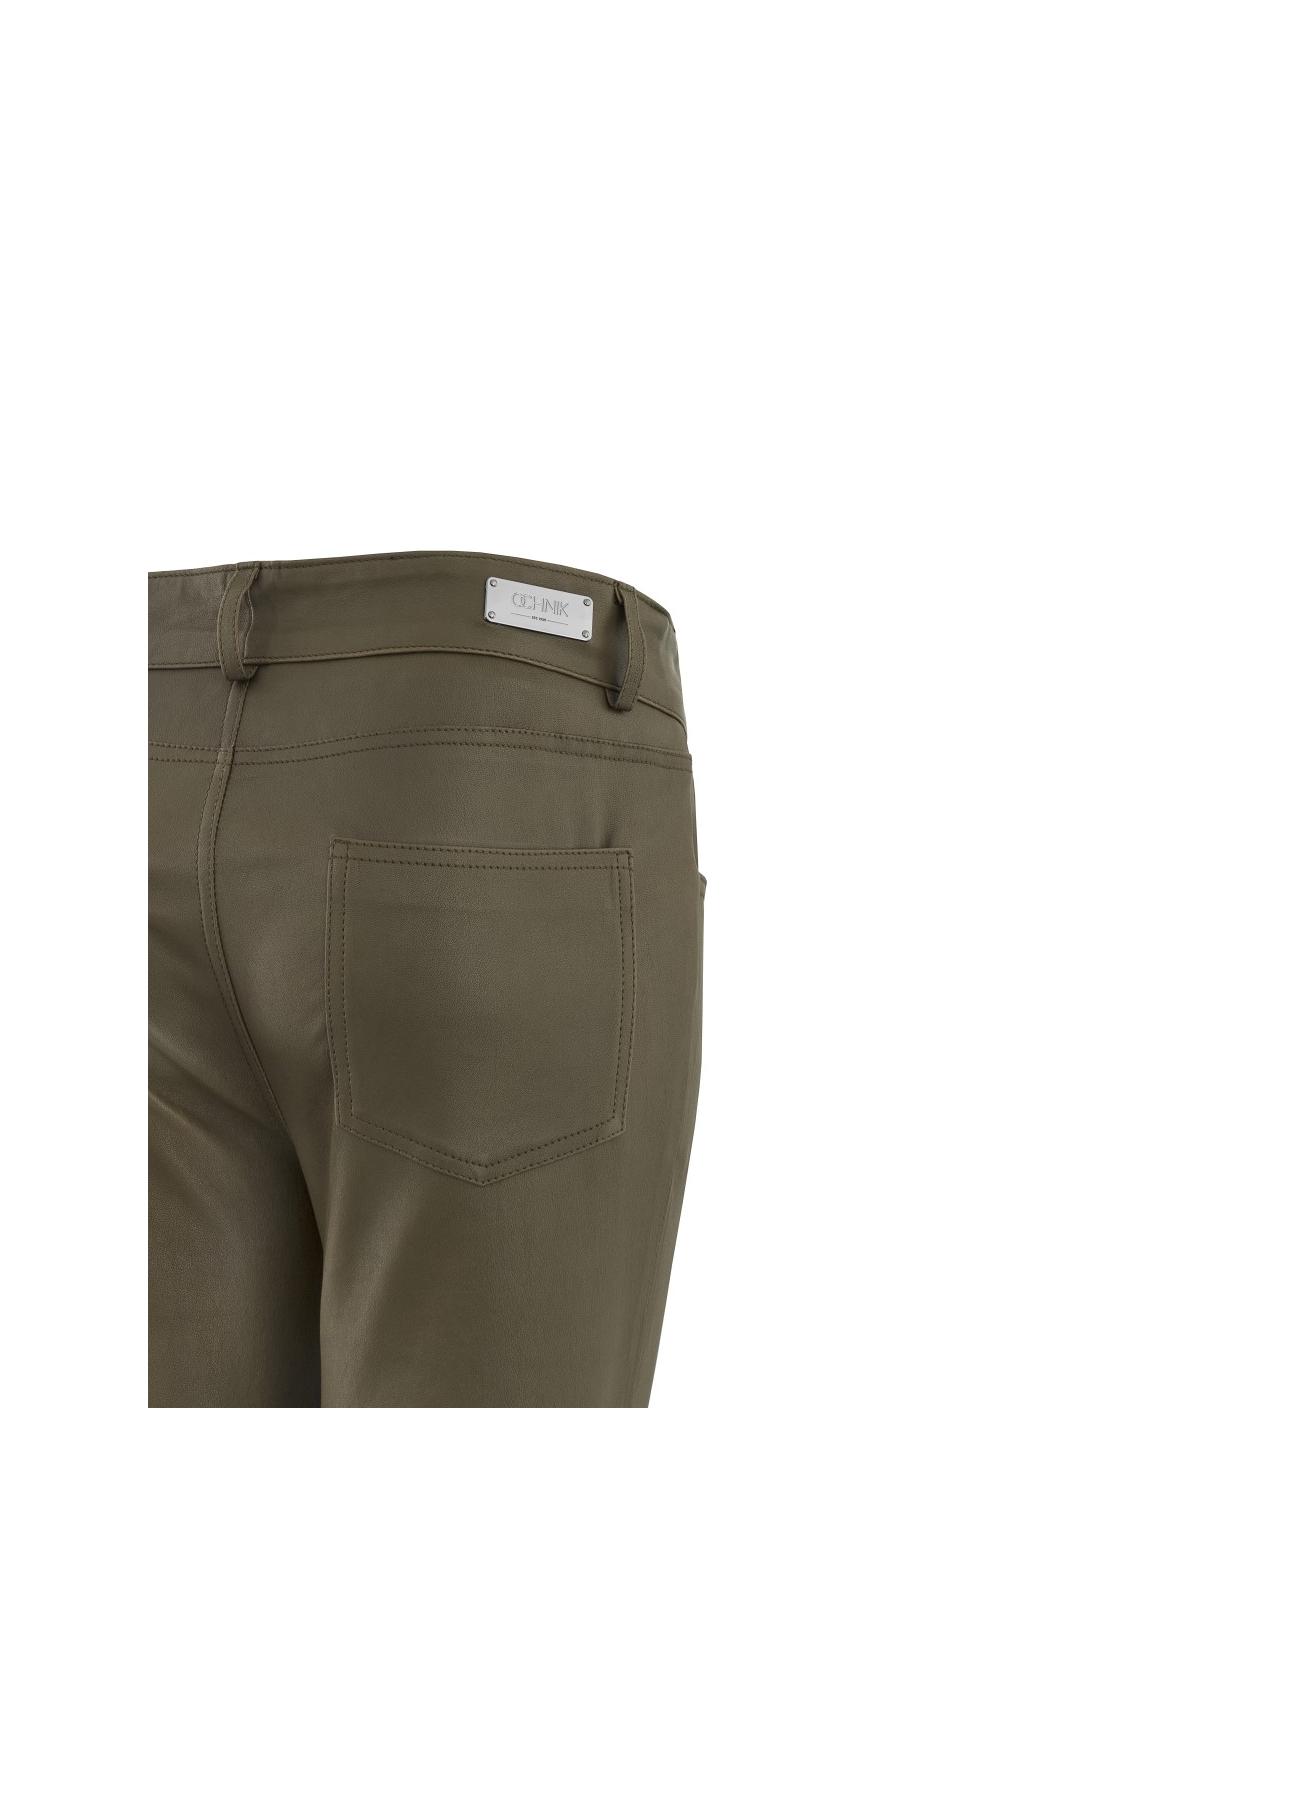 Spodnie damskie SPODS-0005-4116(Z17)